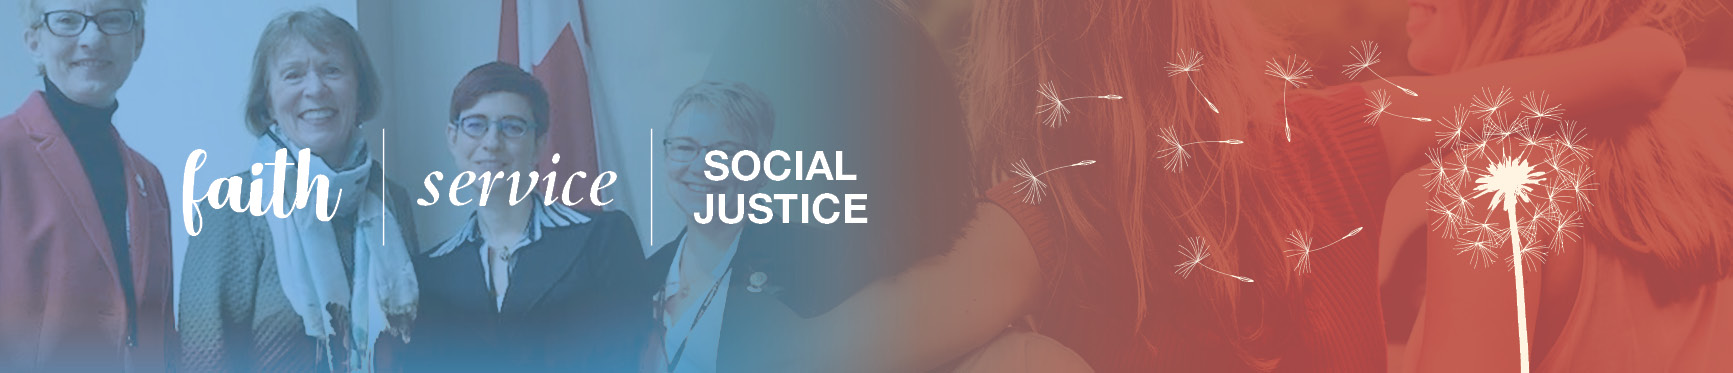 faith | service | social justice